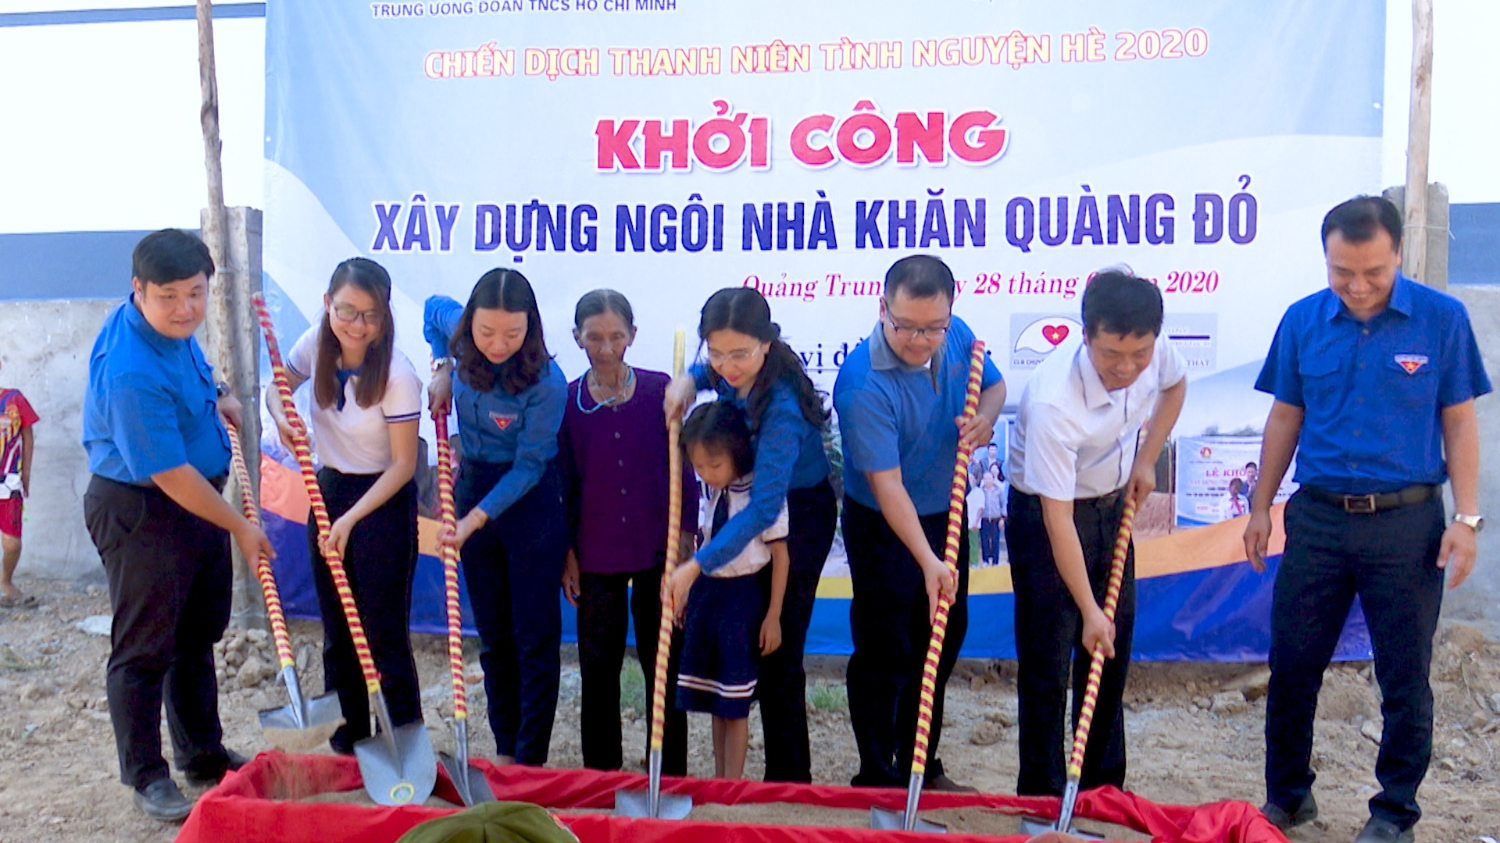 Thị Đoàn Ba Đồn hỗ trợ xây dựng nhà Khăn quàng đỏ tại xã Quảng Trung